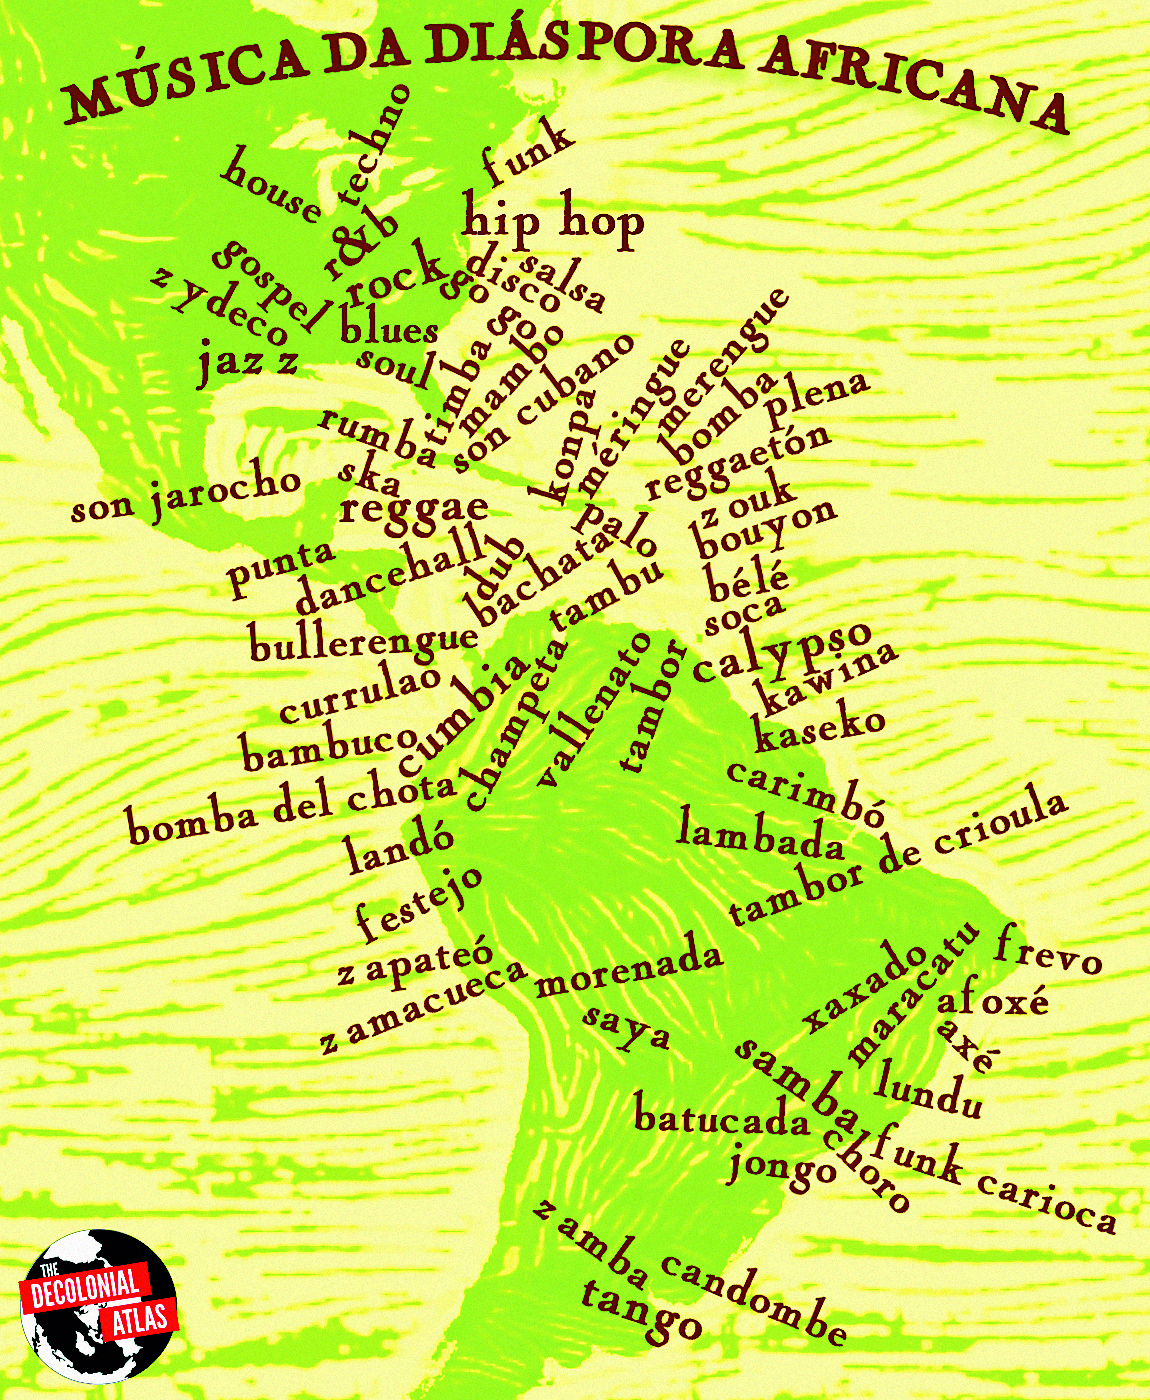 Cartaz. Ritmos originários da diáspora africana nas américas (2012). 
Na parte superior, o título: MÚSICA DA DIÁSPORA AFRICANA. Ao fundo, um mapa em tons de verde com destaque para as Américas. Acima do mapa, as palavras: house, techno, r&b, gospel, rock, hip hop, funk, rock, blues, soul, jazz, son jarocho, reggae, rumba, timba, mambo, disco, salsa, son cubano, konpa, méringue, dancehall, punta, bullerengue, currulao, bambuco, cumbia, dub, reggaetón, calypso, carimbó, tambor, festejo, morenada, lambada, tambor de crioula, xaxado, maracatu, samba, batucada, jongo, tango, candombe, choro, funk carioca, lundu, axé, afoxé, frevo.